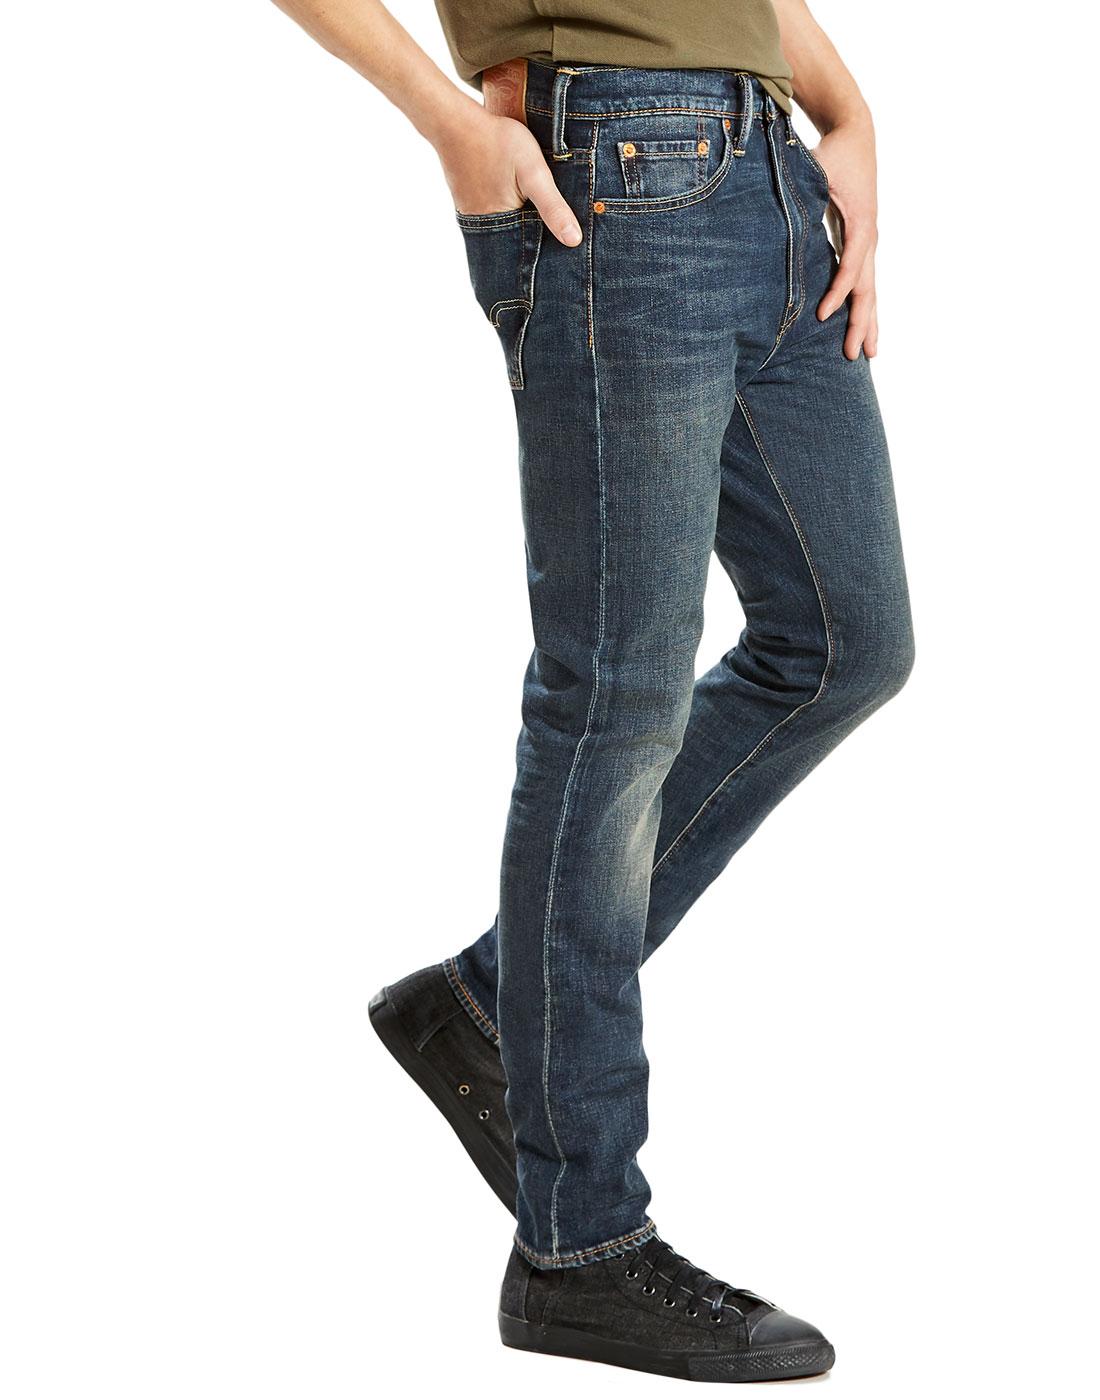 levi's 510 jeans